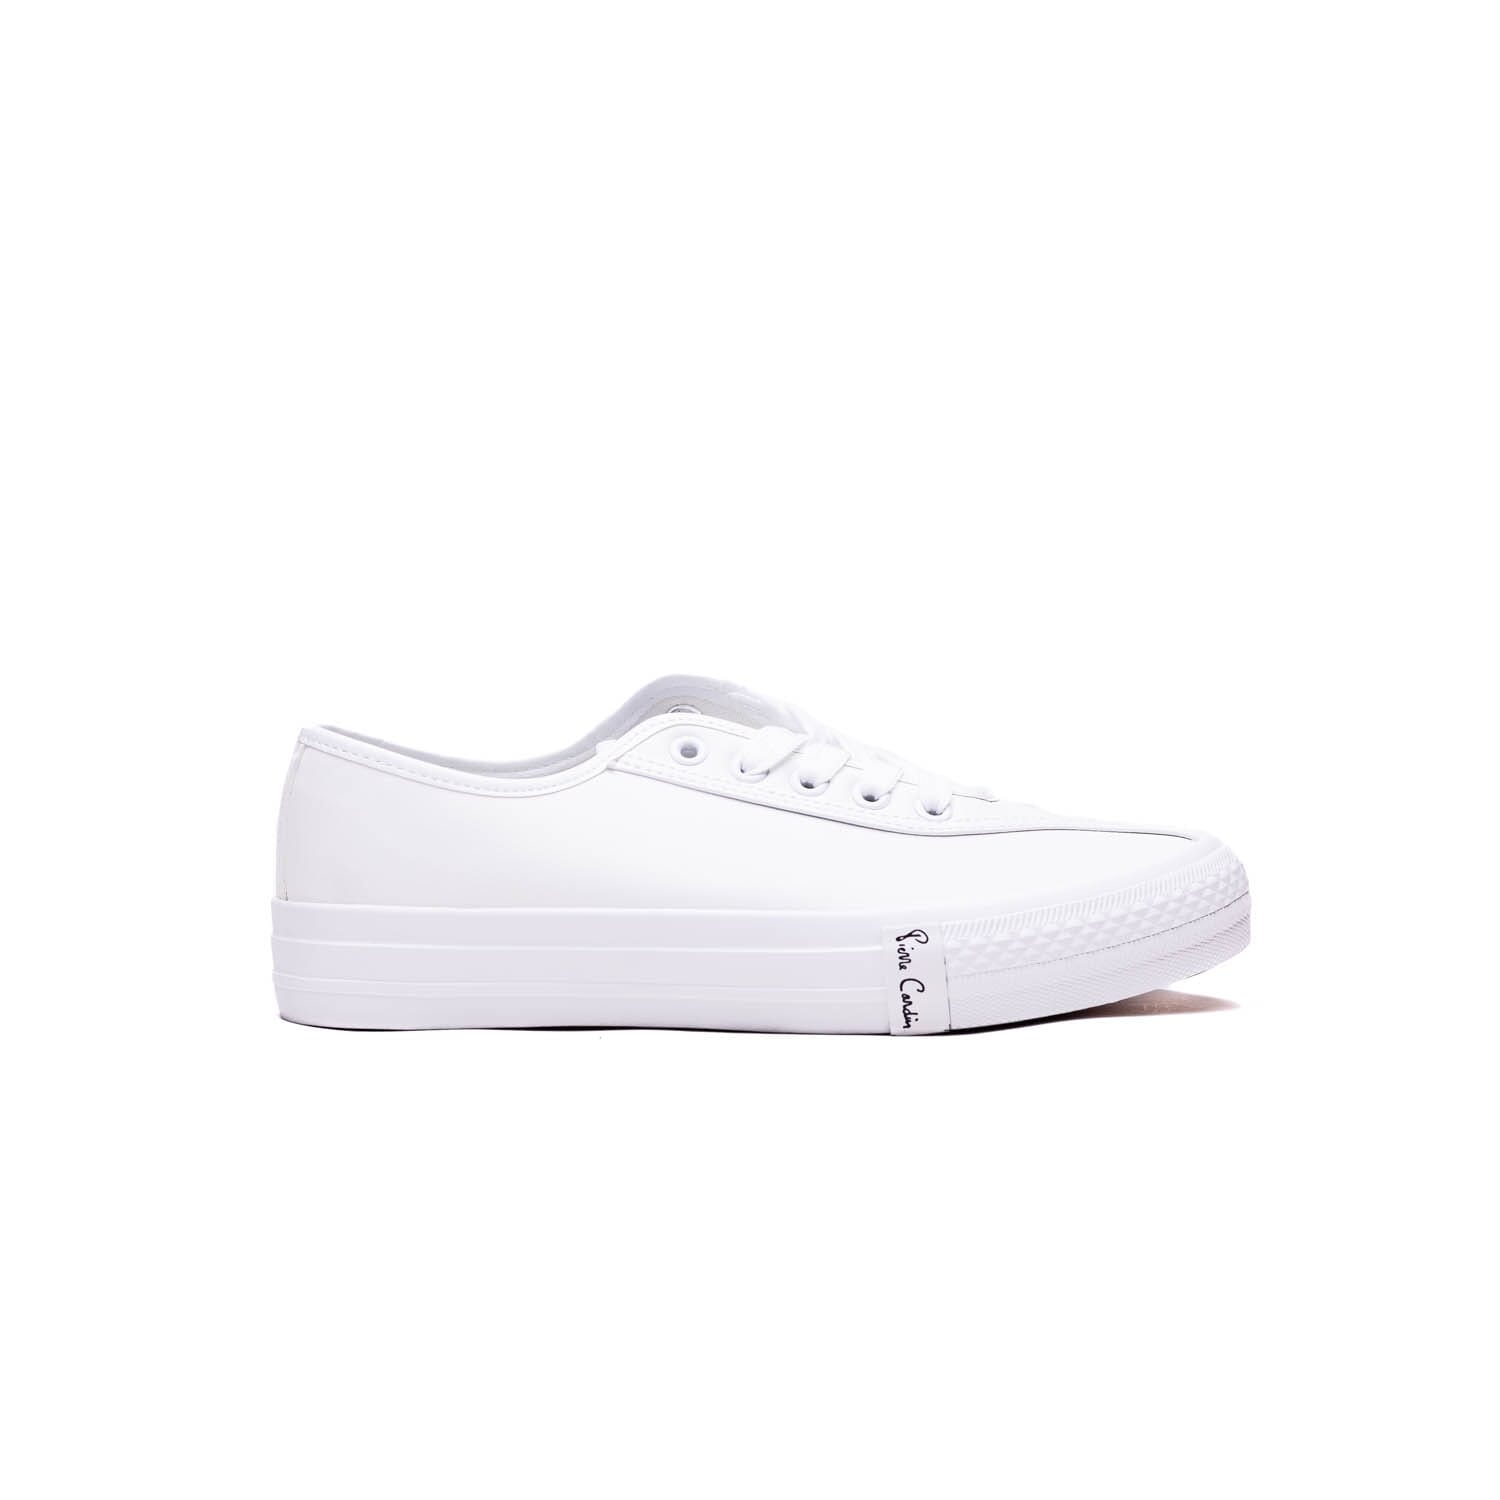 Pierre Cardin -10008 -White – Perocili Shoes